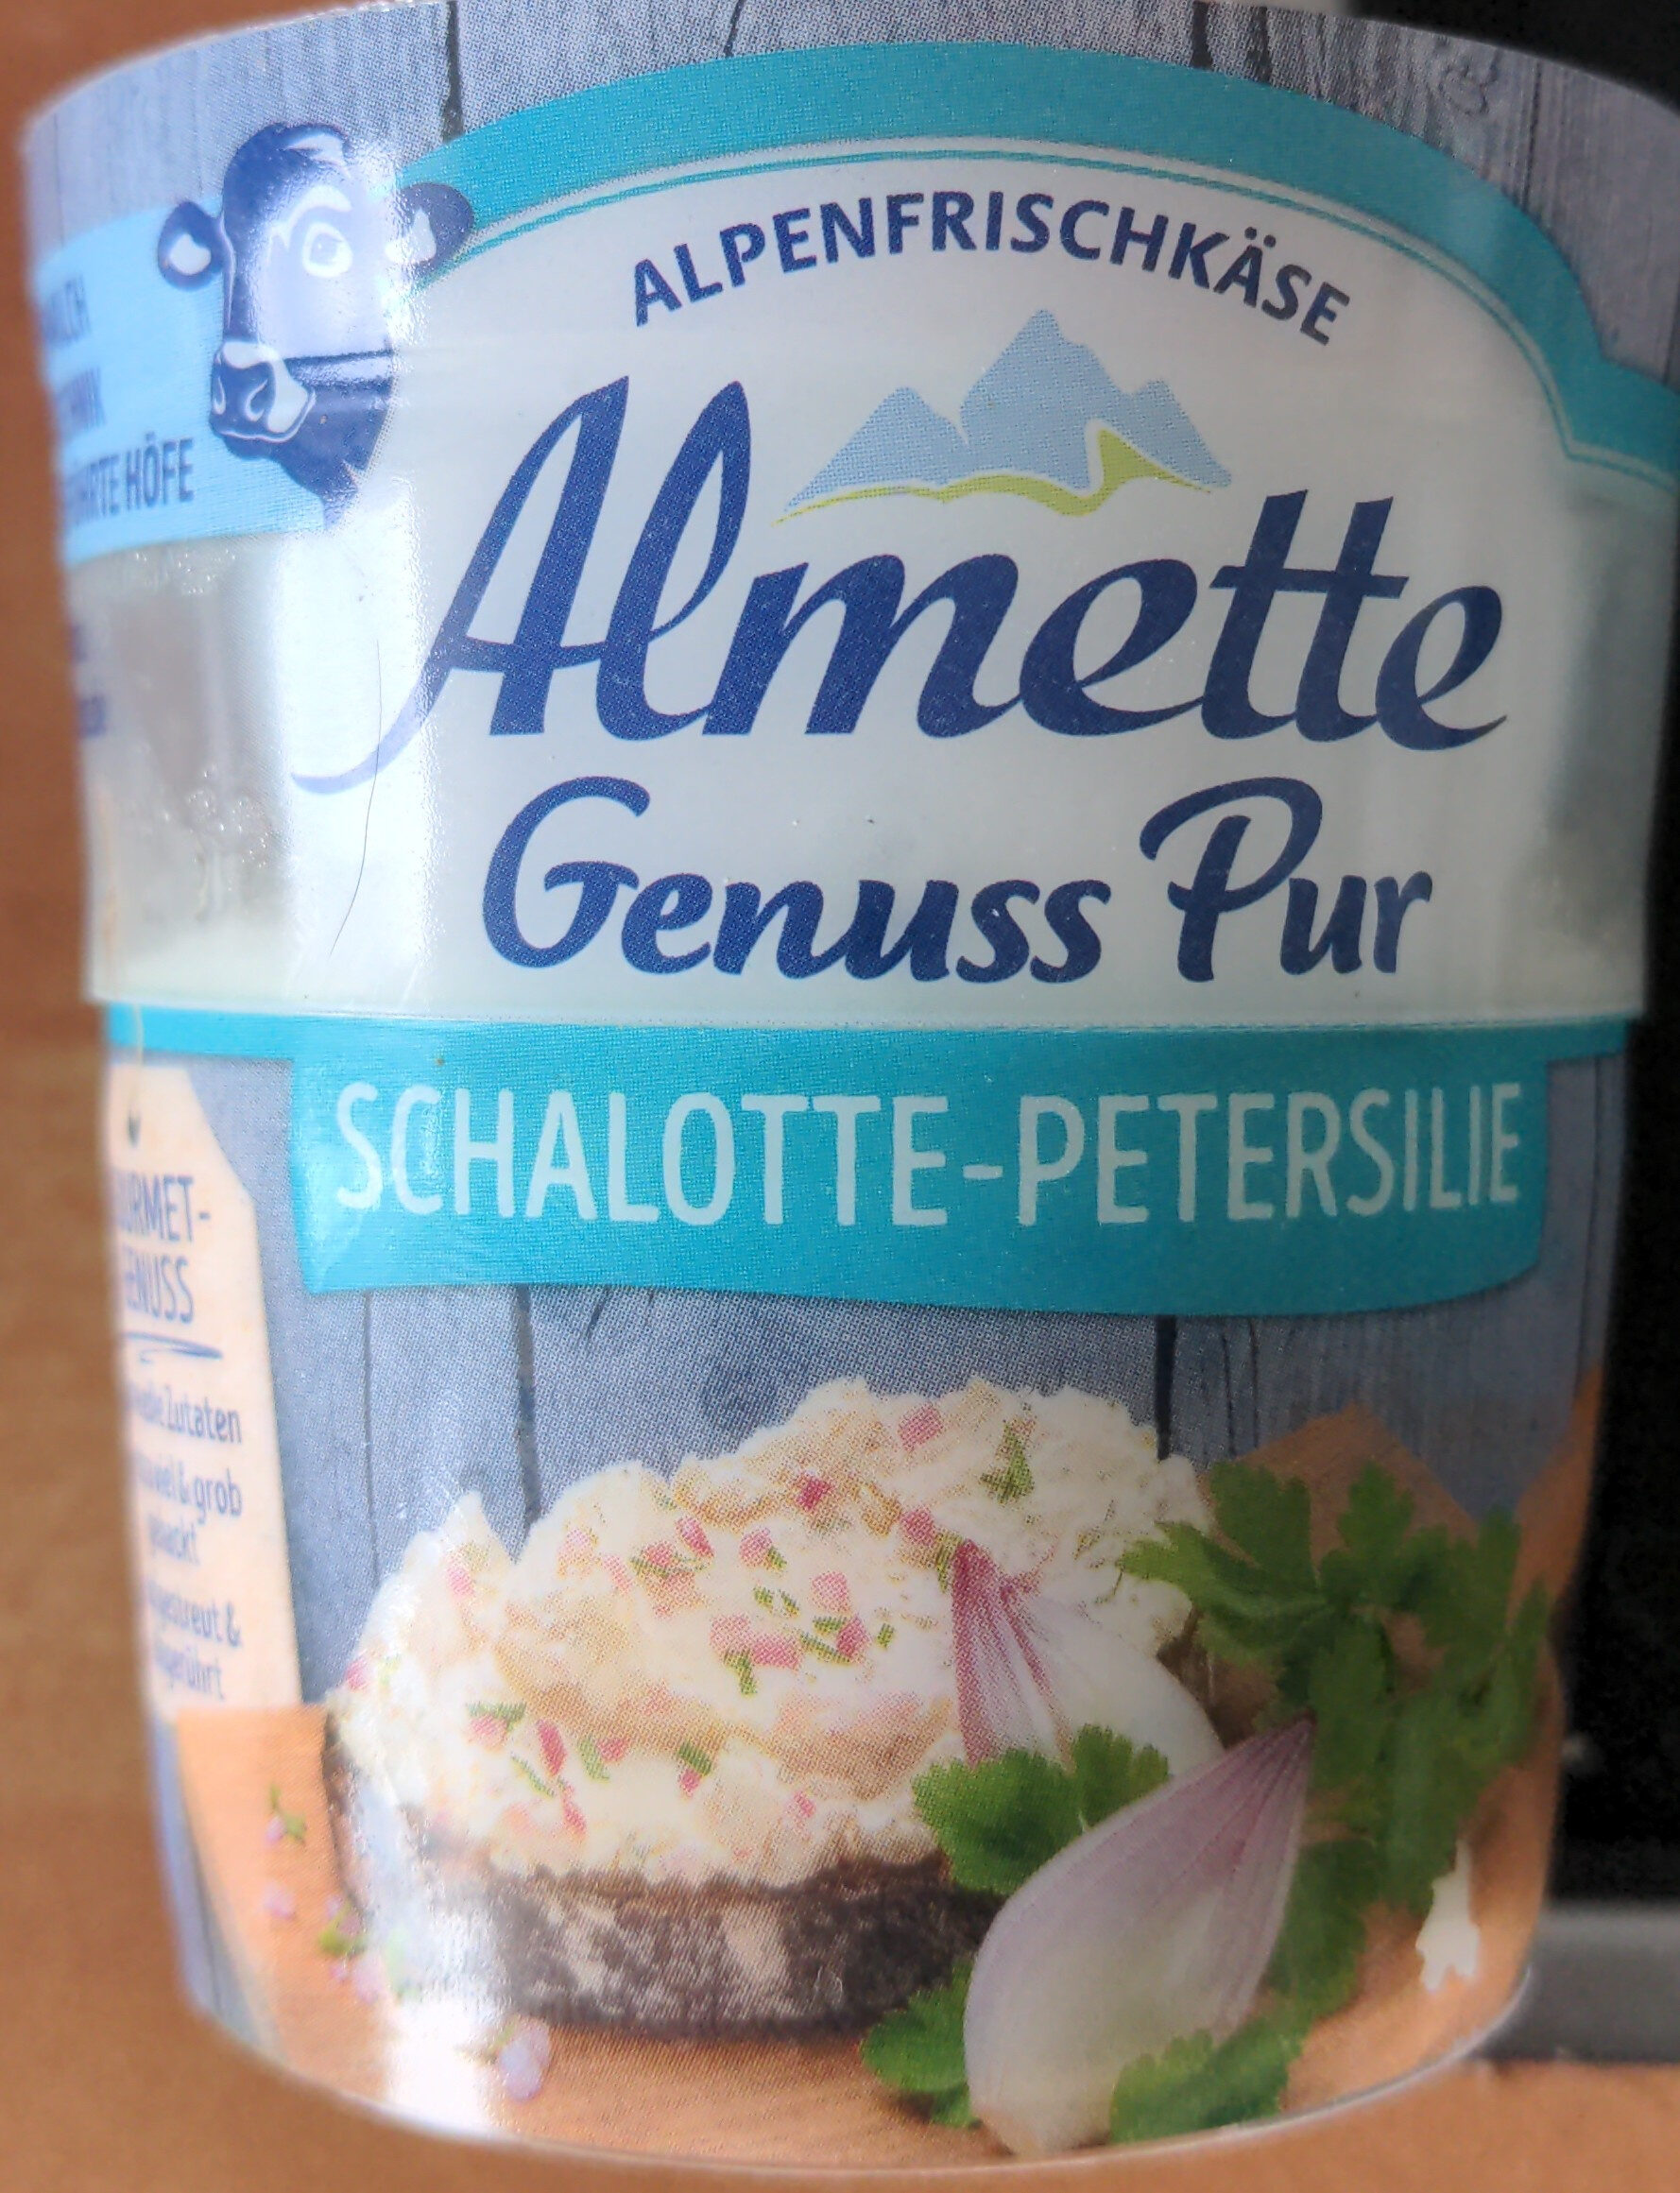 Almette Genuss Pur Schalotte-Petersilie - Producto - de